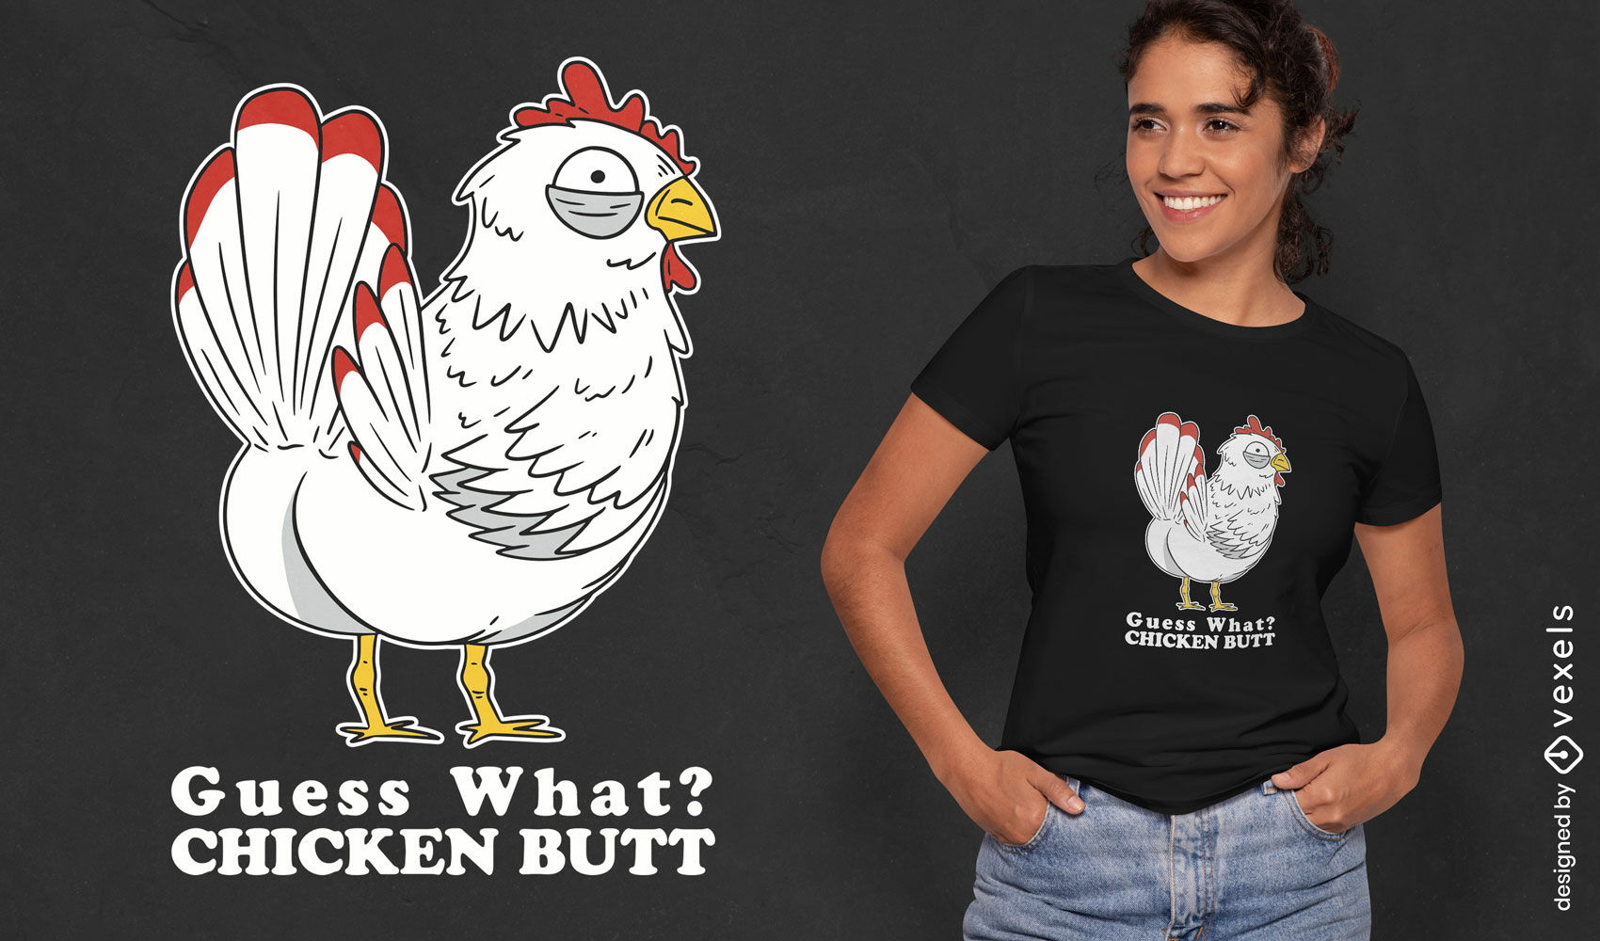 Guess what chicken butt t-shirt design